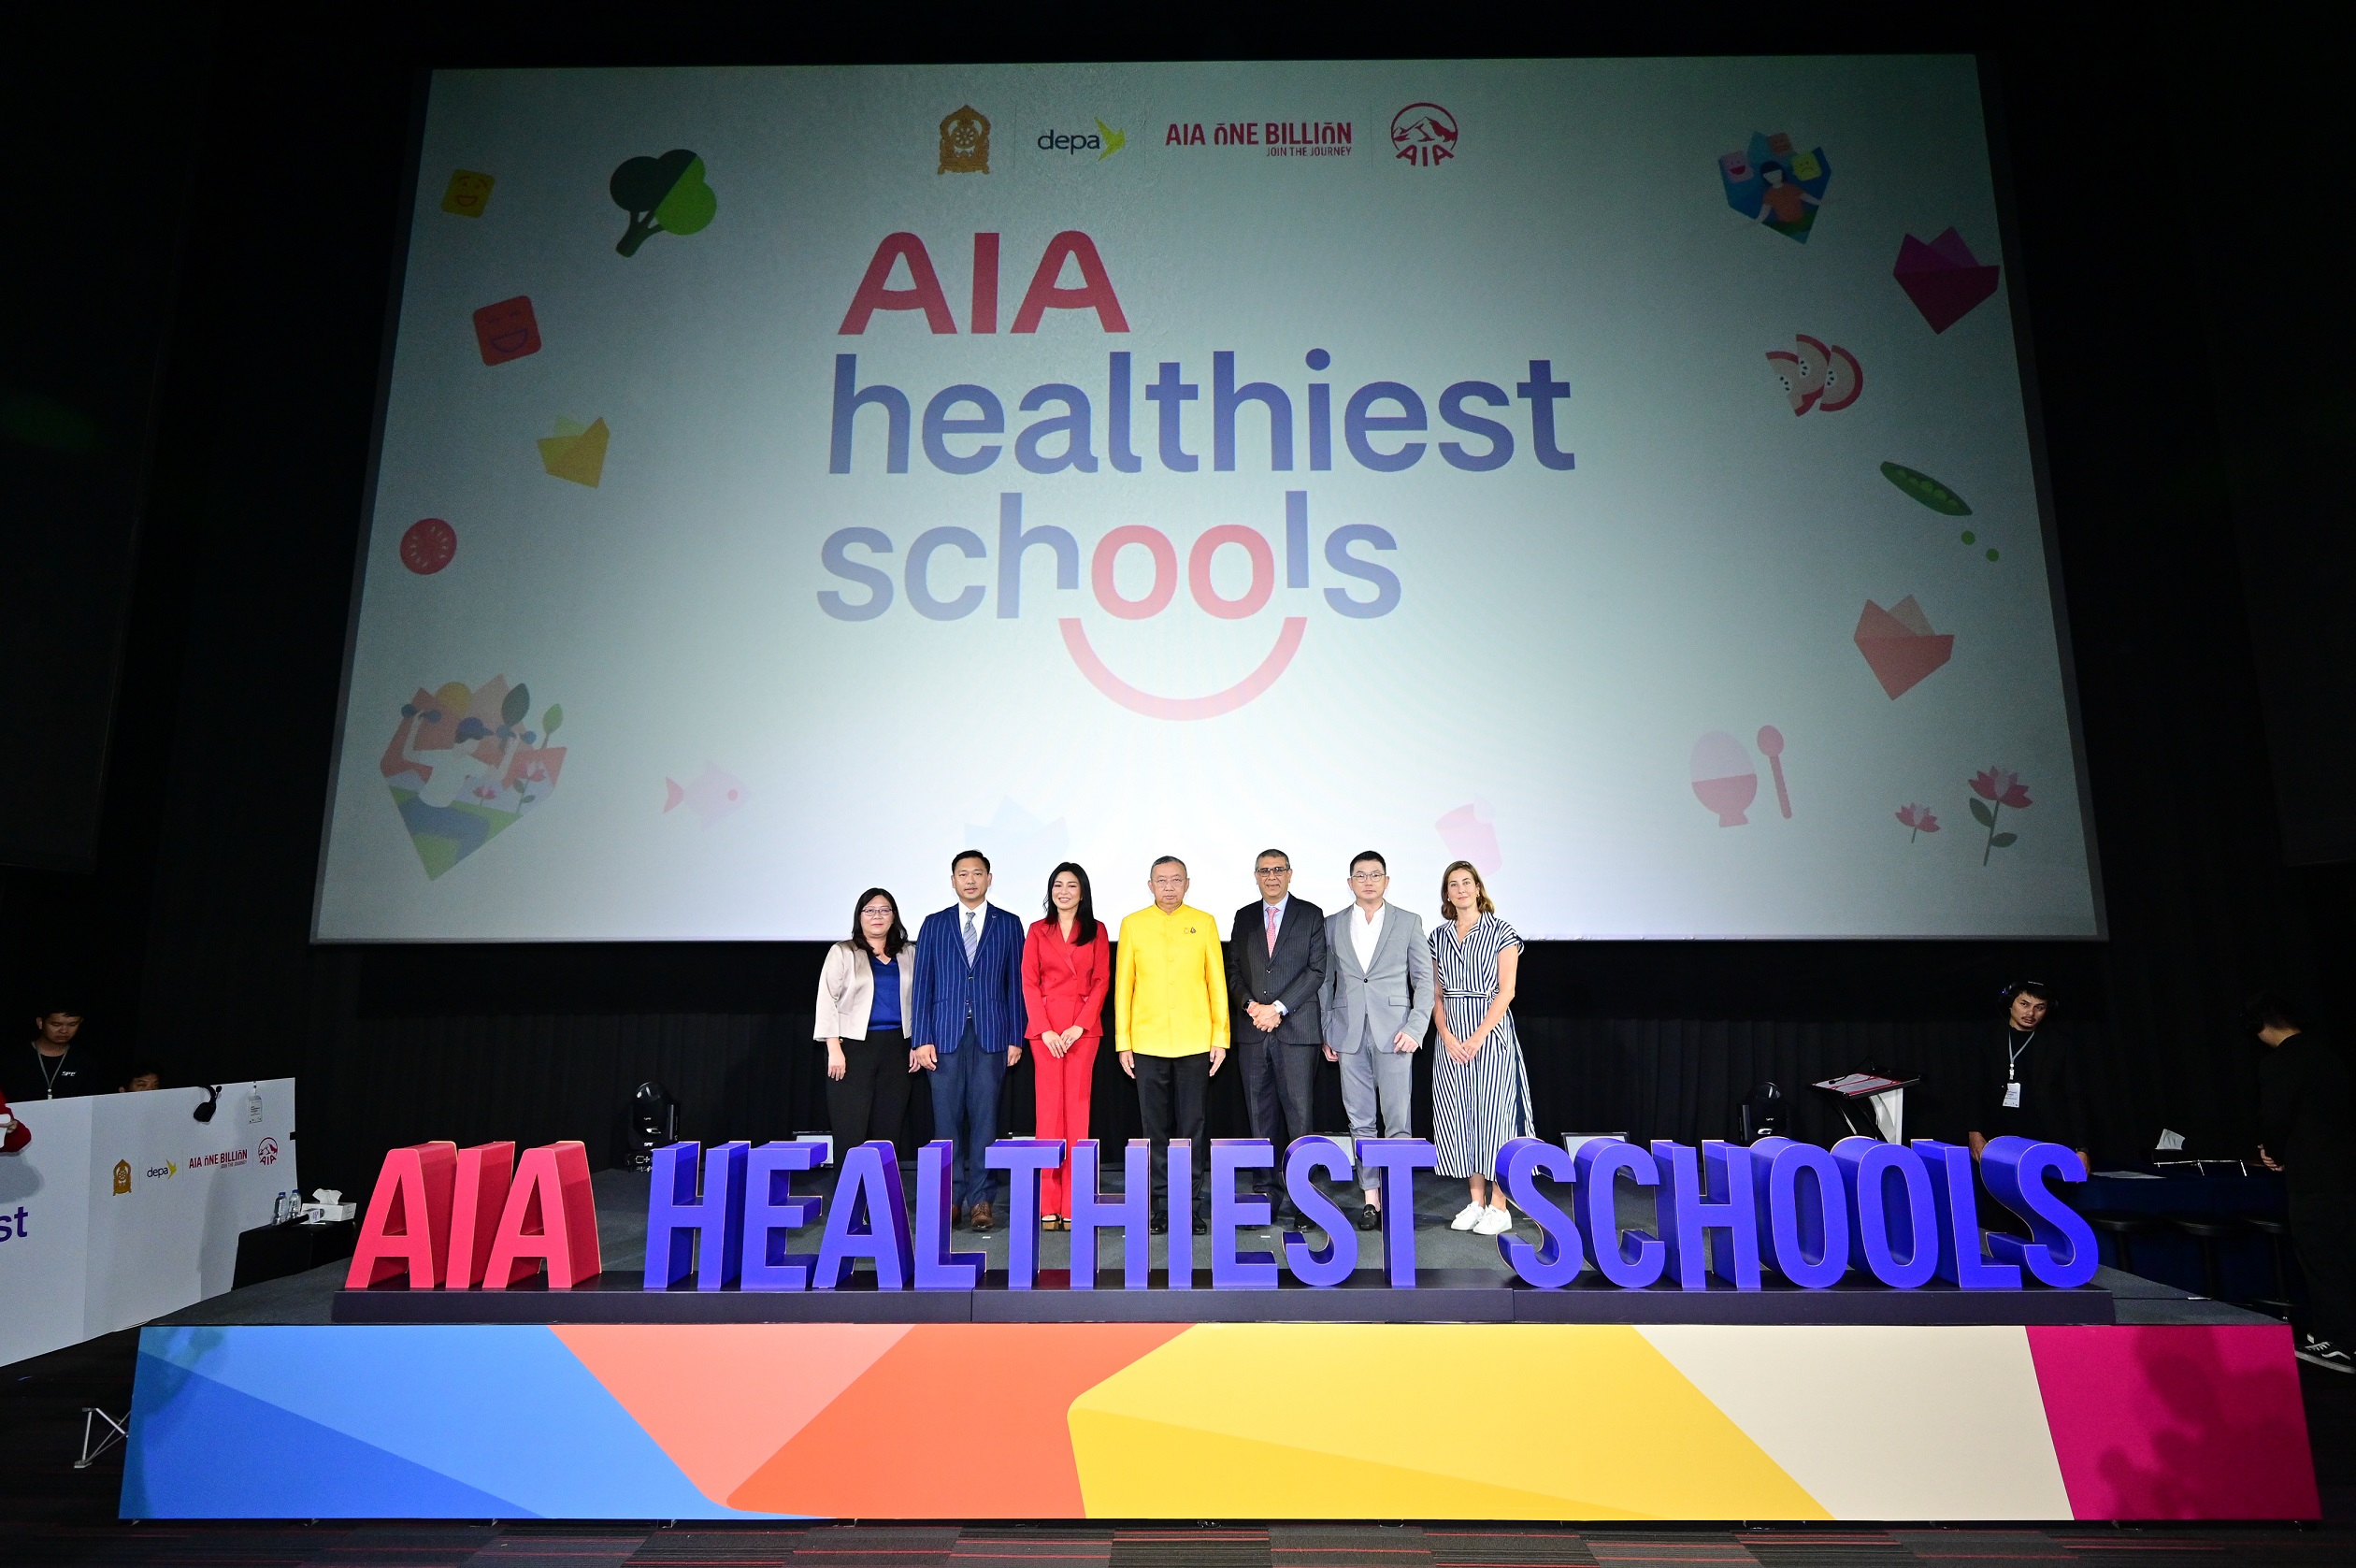 เอไอเอ ประเทศไทย มอบรางวัลเชิดชูเกียรติแก่โรงเรียนที่ชนะเลิศในโครงการ  “สุดยอดโรงเรียนสุขภาพดี - AIA Healthiest Schools ปีที่ 2” สำนักพิมพ์แม่บ้าน